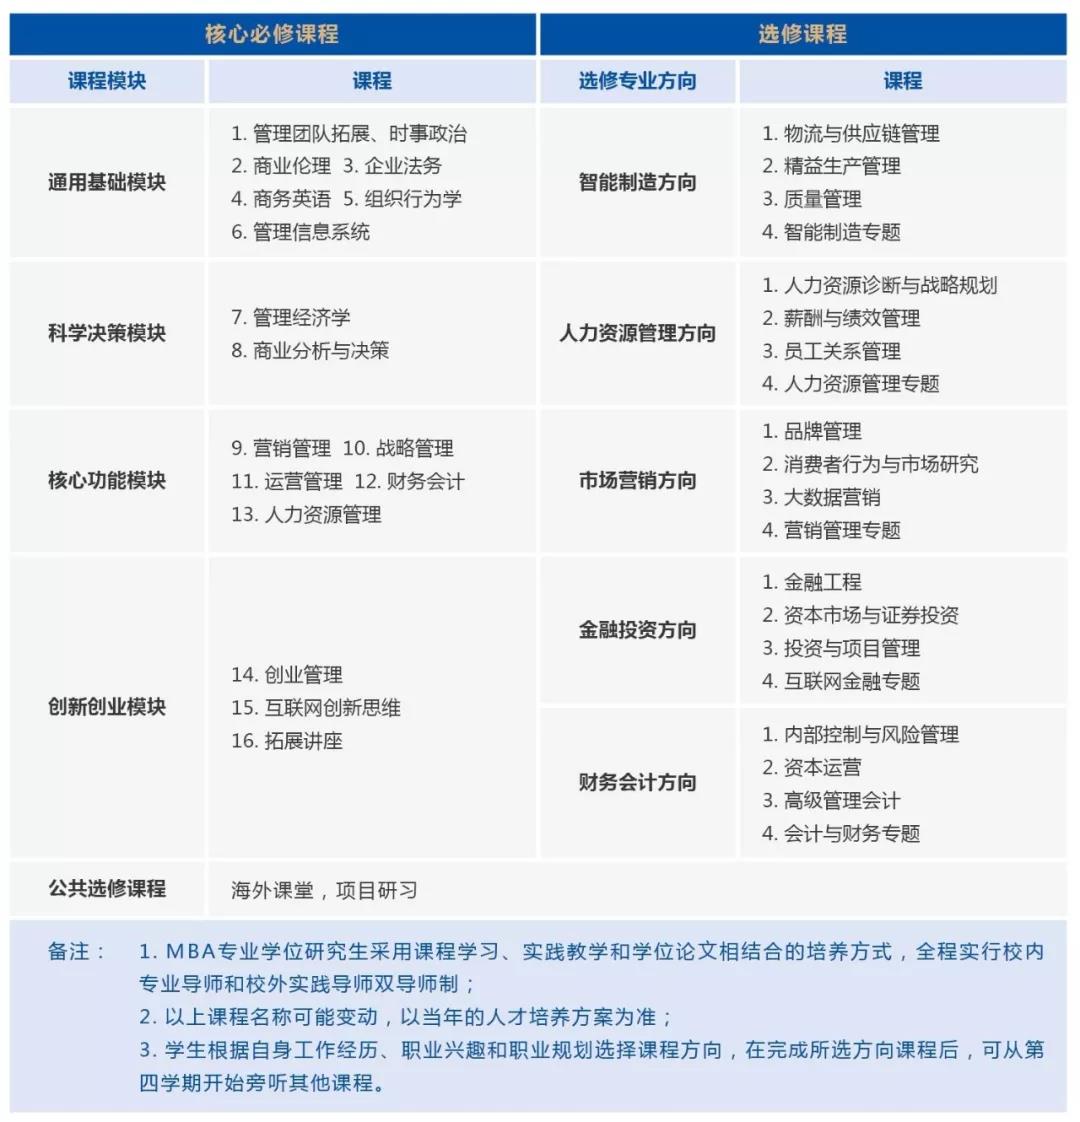 2020年广东工业大学MBA招生简章